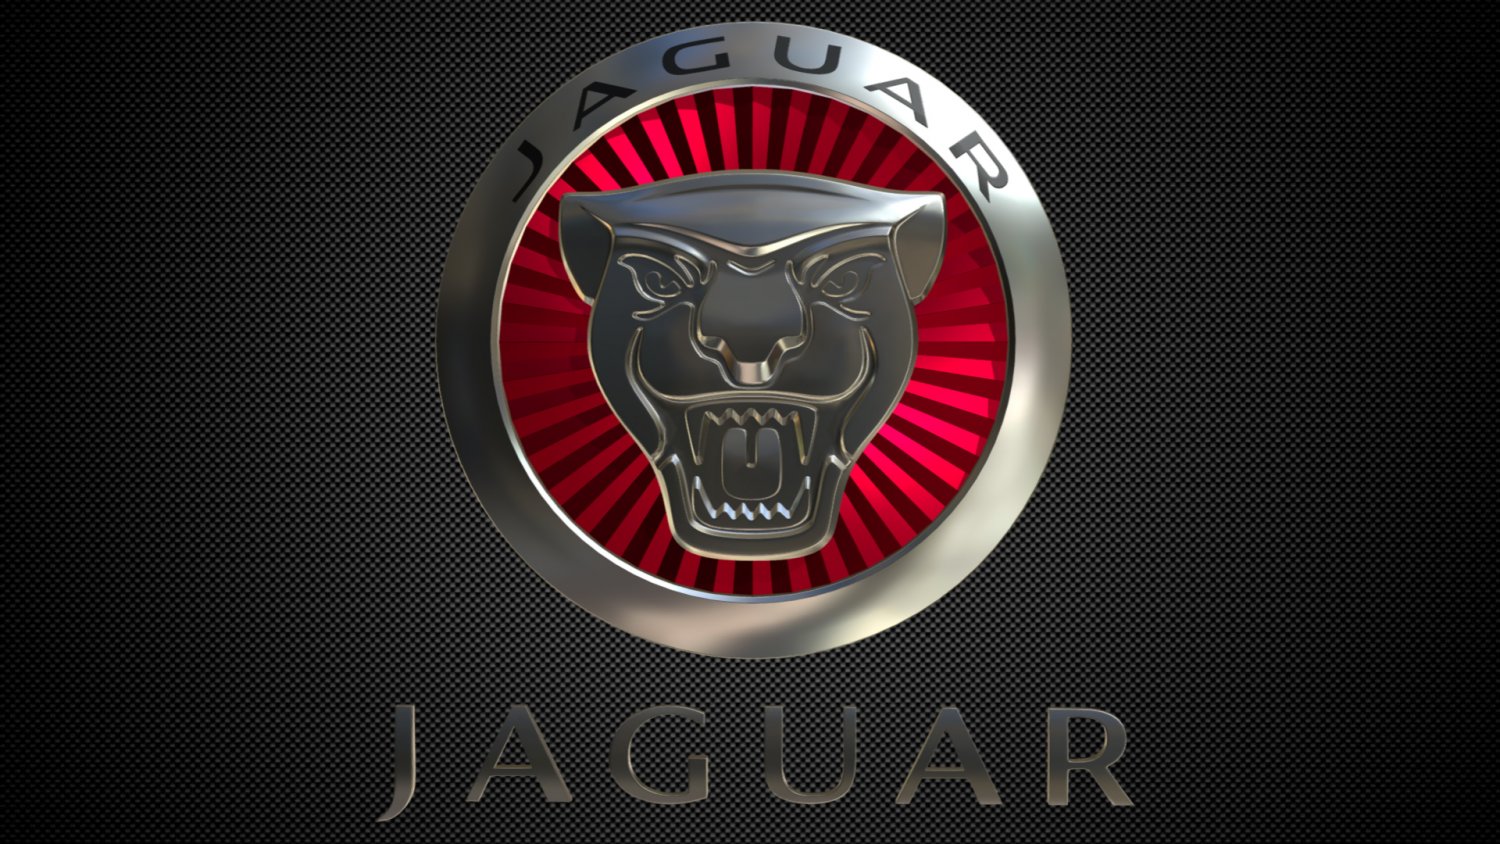 jaguar logo 2 3D Models in Parts of auto 3DExport